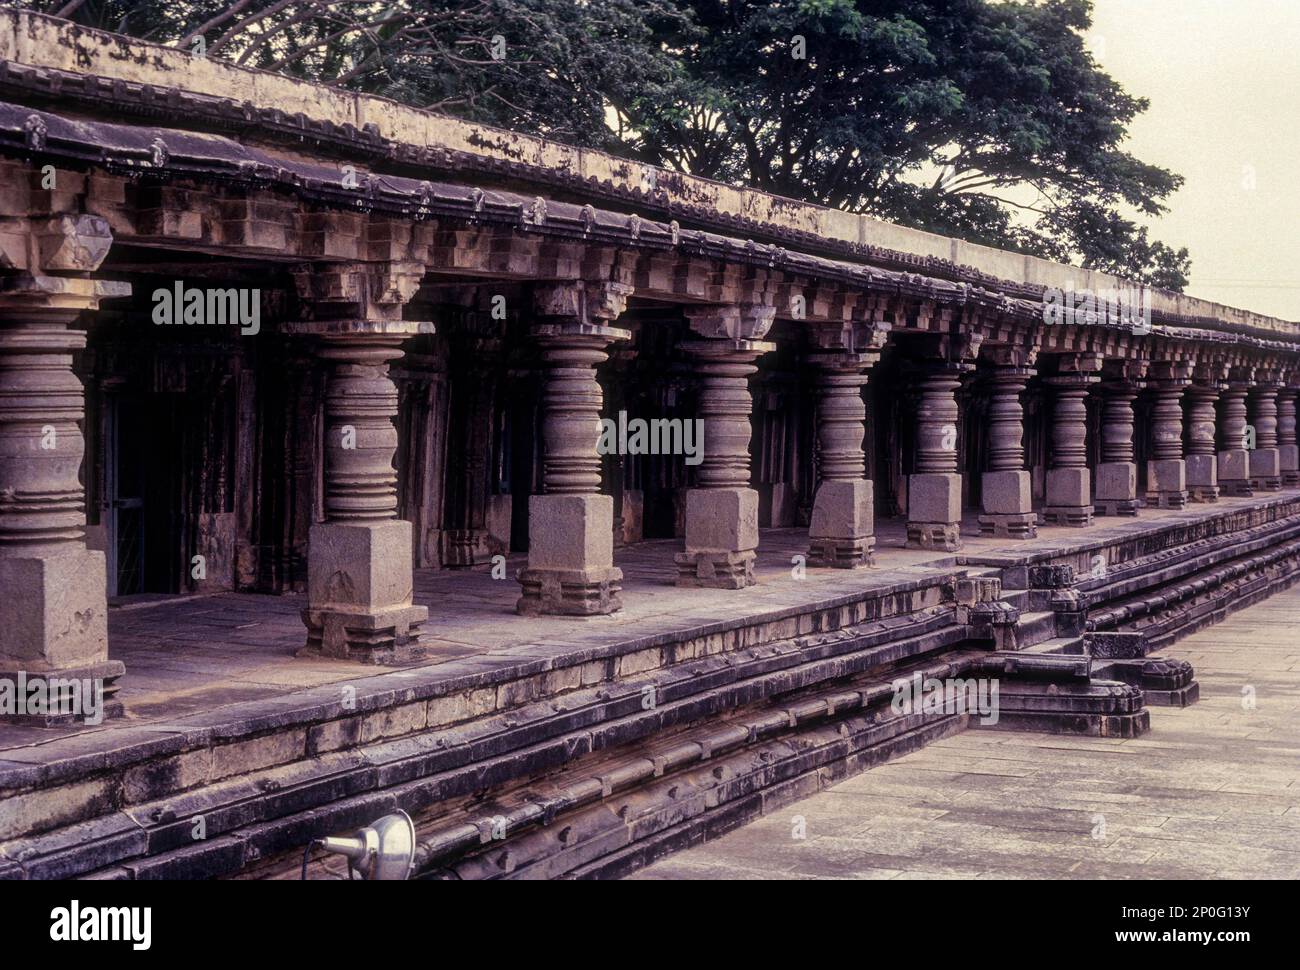 La colonnade pillée autour de la cour du sanctuaire dans le temple de Chennakesava à Somanathapura Somnathpur, Karnataka, Inde du Sud, Inde, Asie Banque D'Images